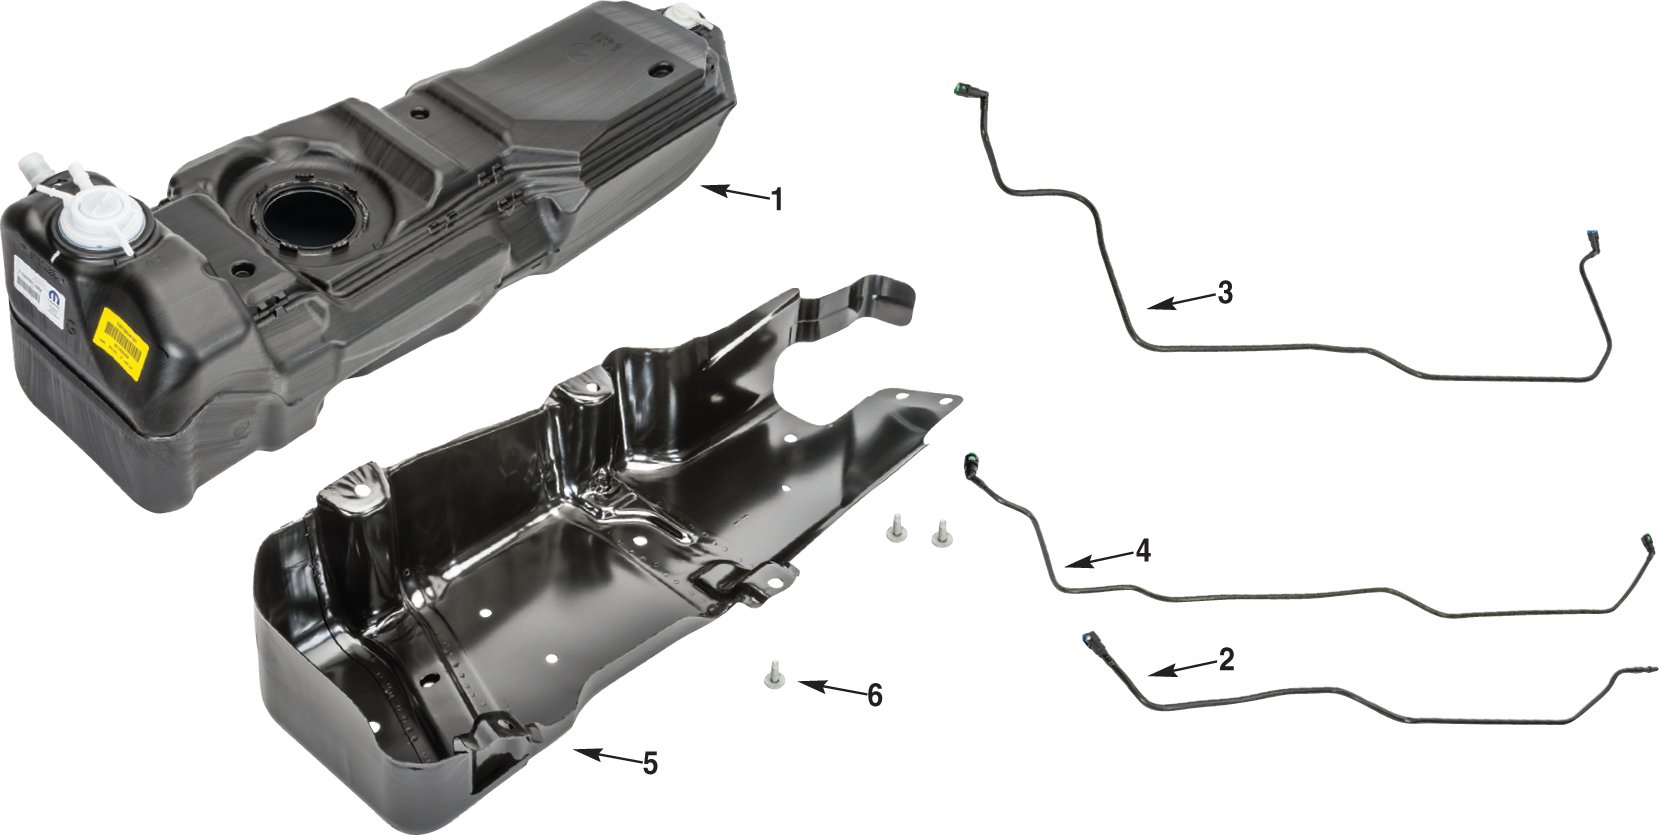 Jeep Wrangler JK Fuel Tank Parts | Quadratec